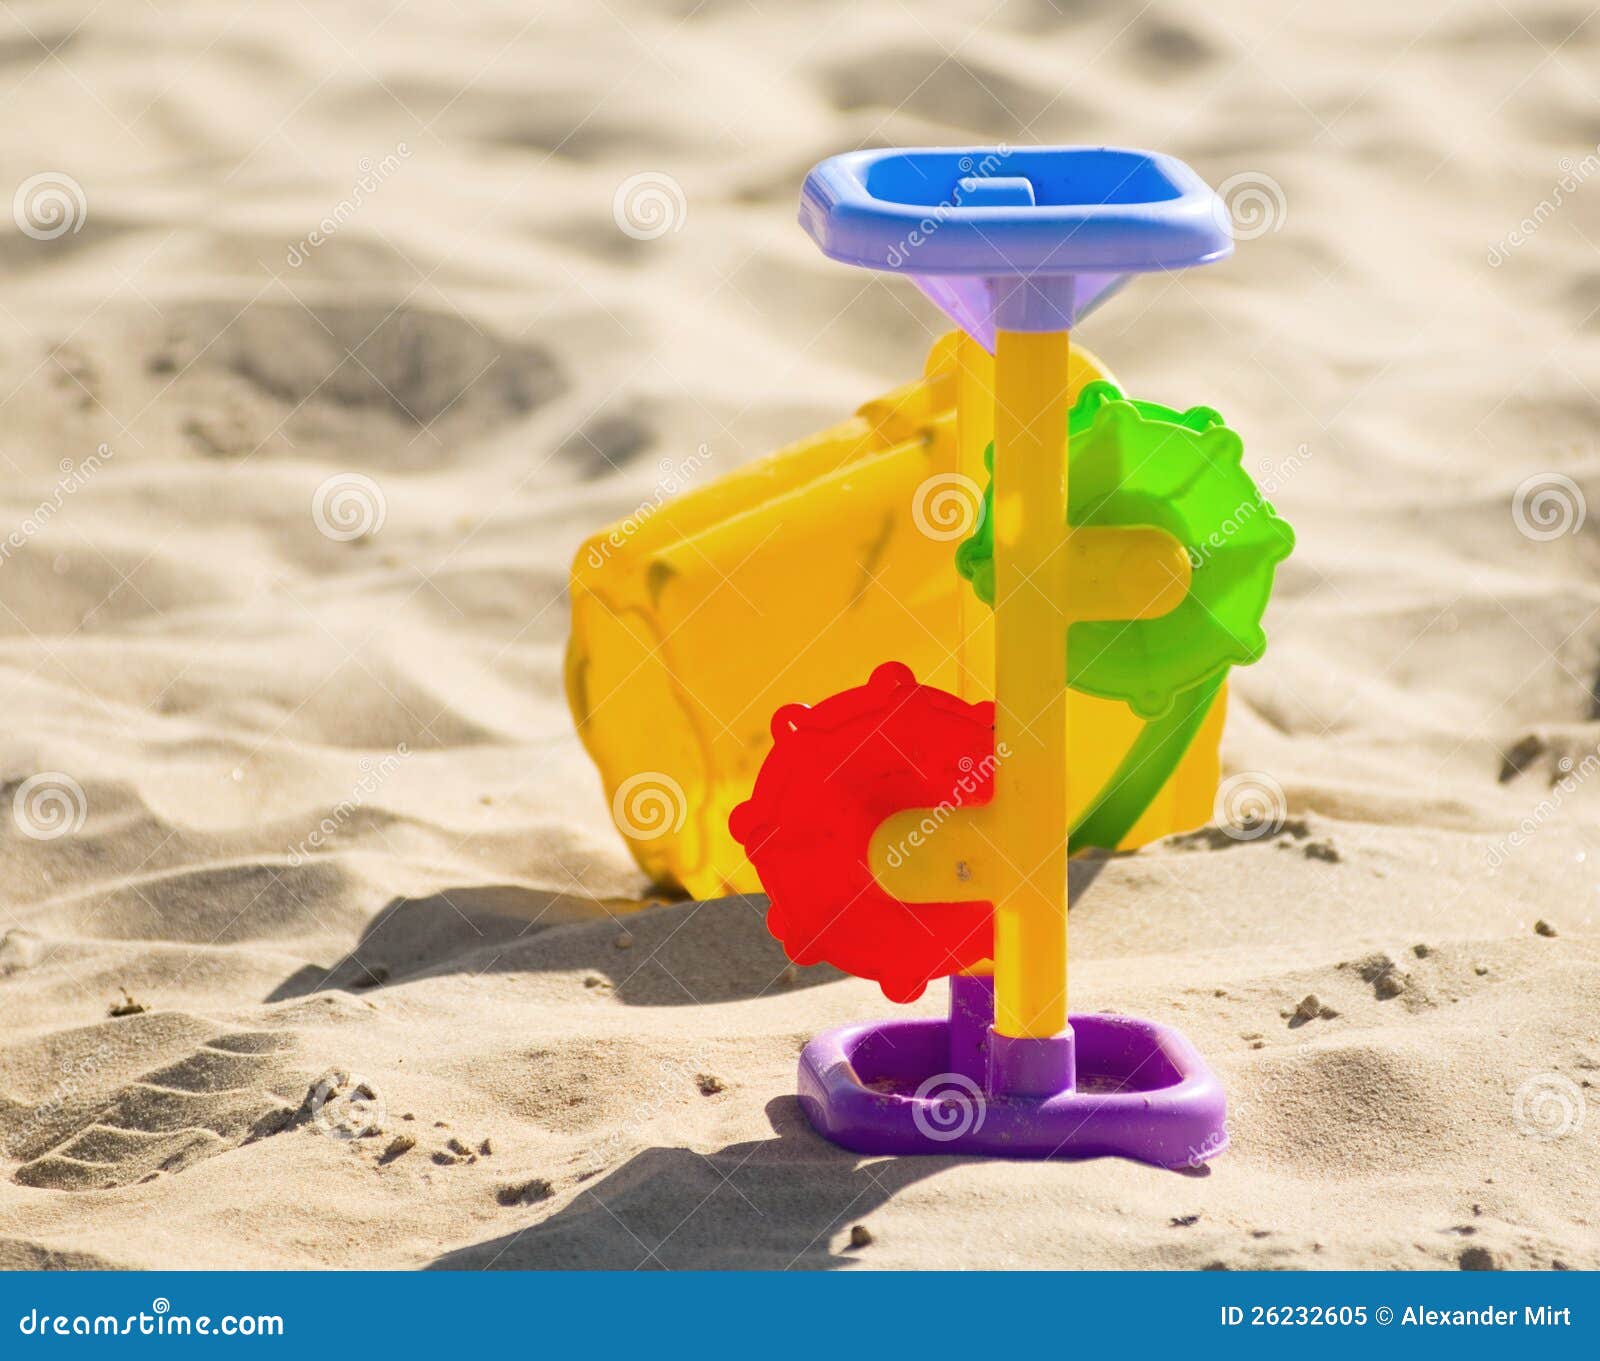 Kinder `s Spielwaren auf dem Sand. Kinder `s spielt für Sand- und sunblocklotion am Strand. Sommerferienkonzept